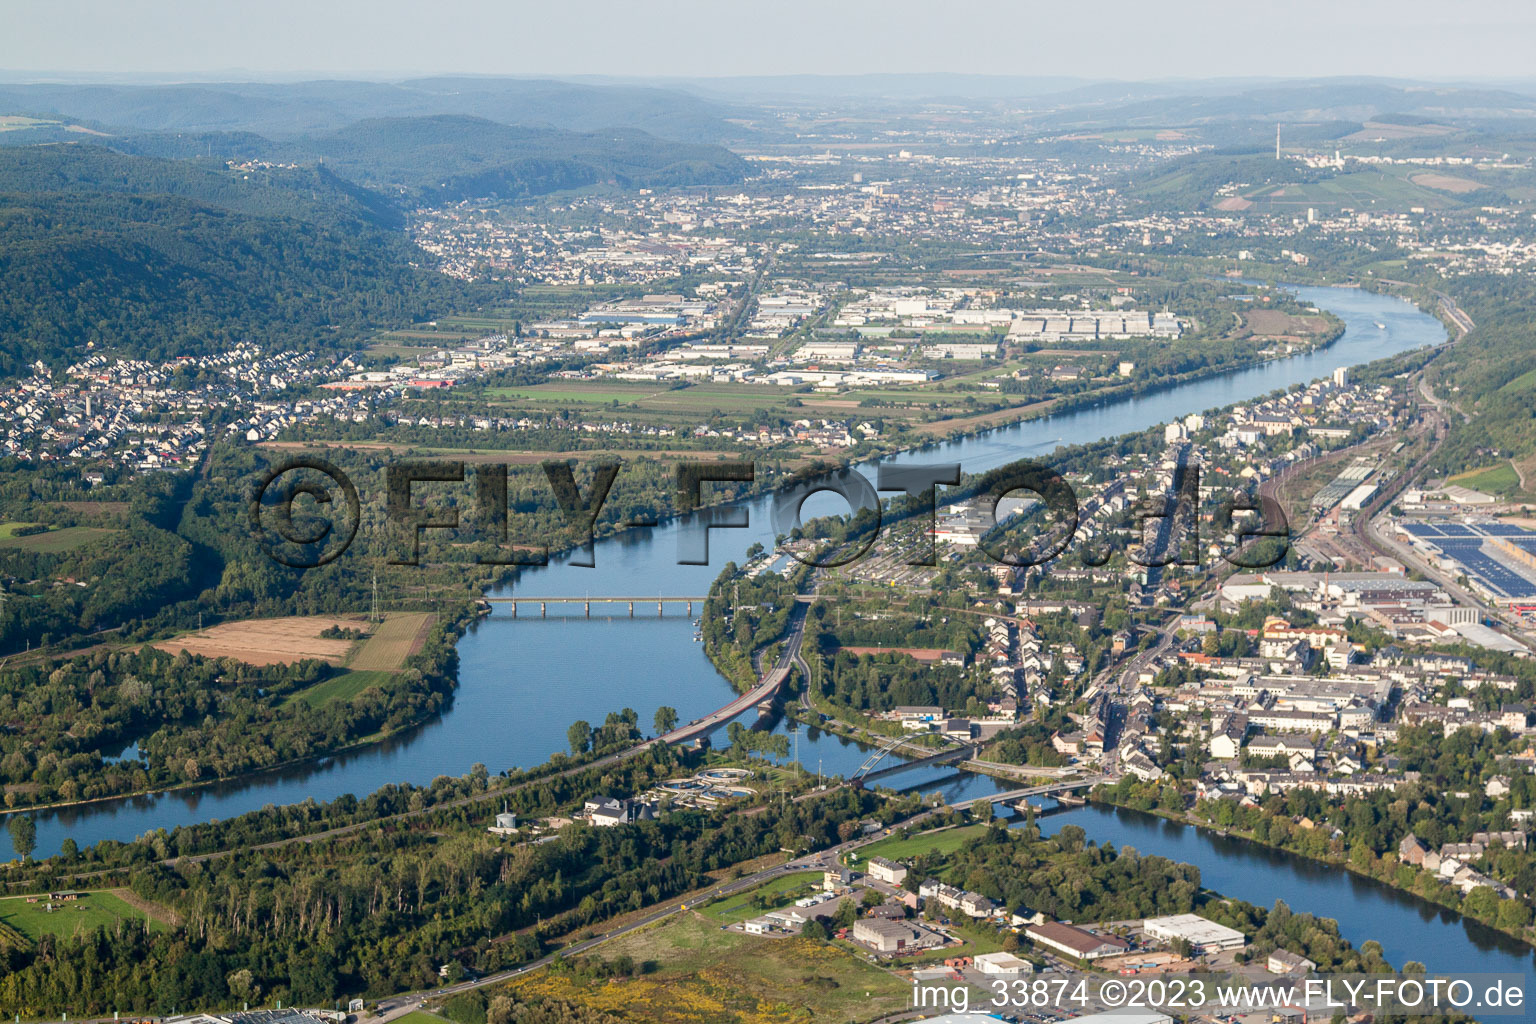 Luftbild von Konz, Saarmündung in die Mosel im Bundesland Rheinland-Pfalz, Deutschland